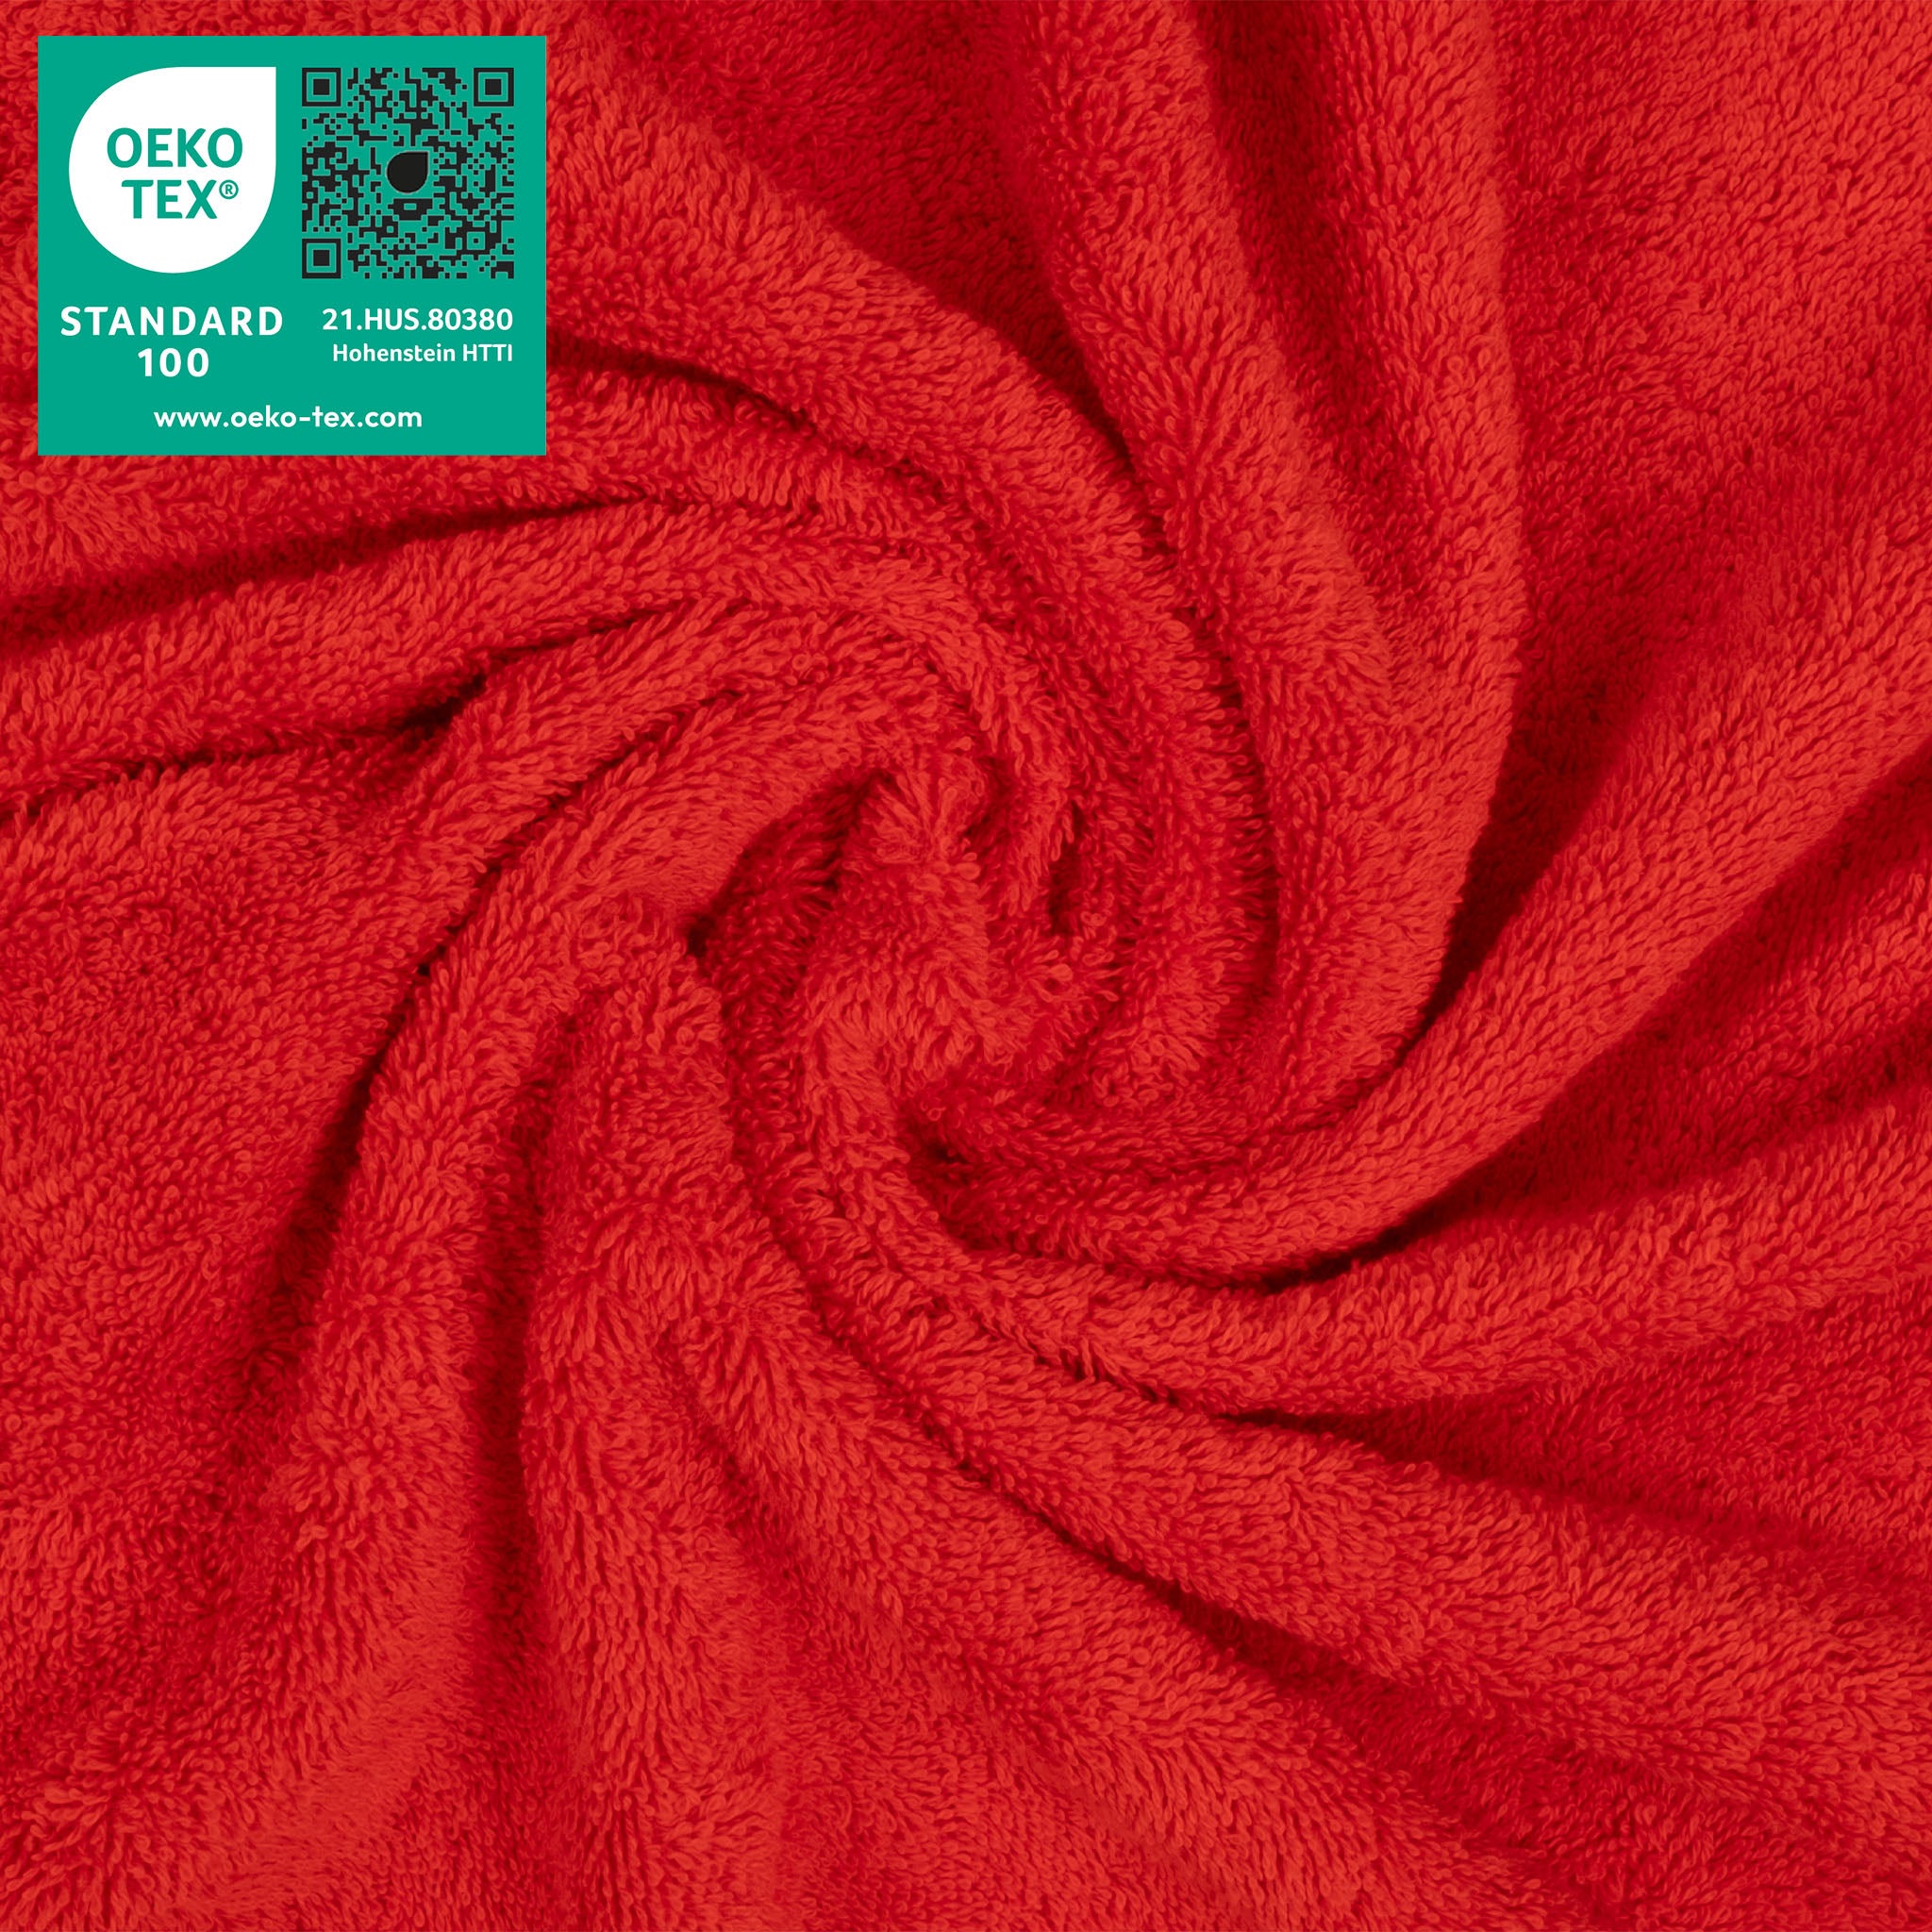 American Soft Linen 100% Turkish Cotton 4 Piece Washcloth Set red-3